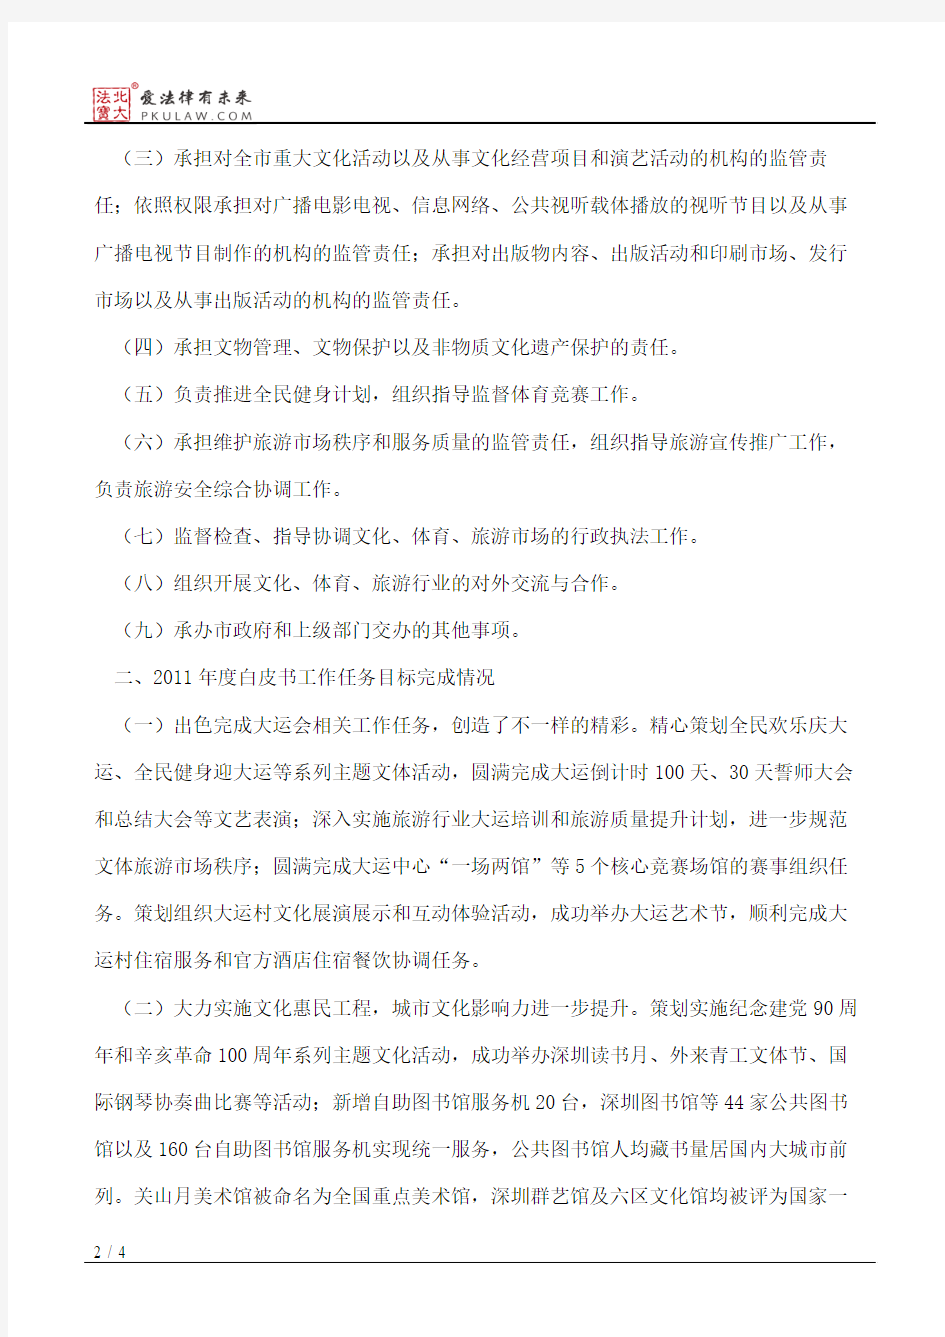 深圳市文体旅游局2012年度公共服务白皮书